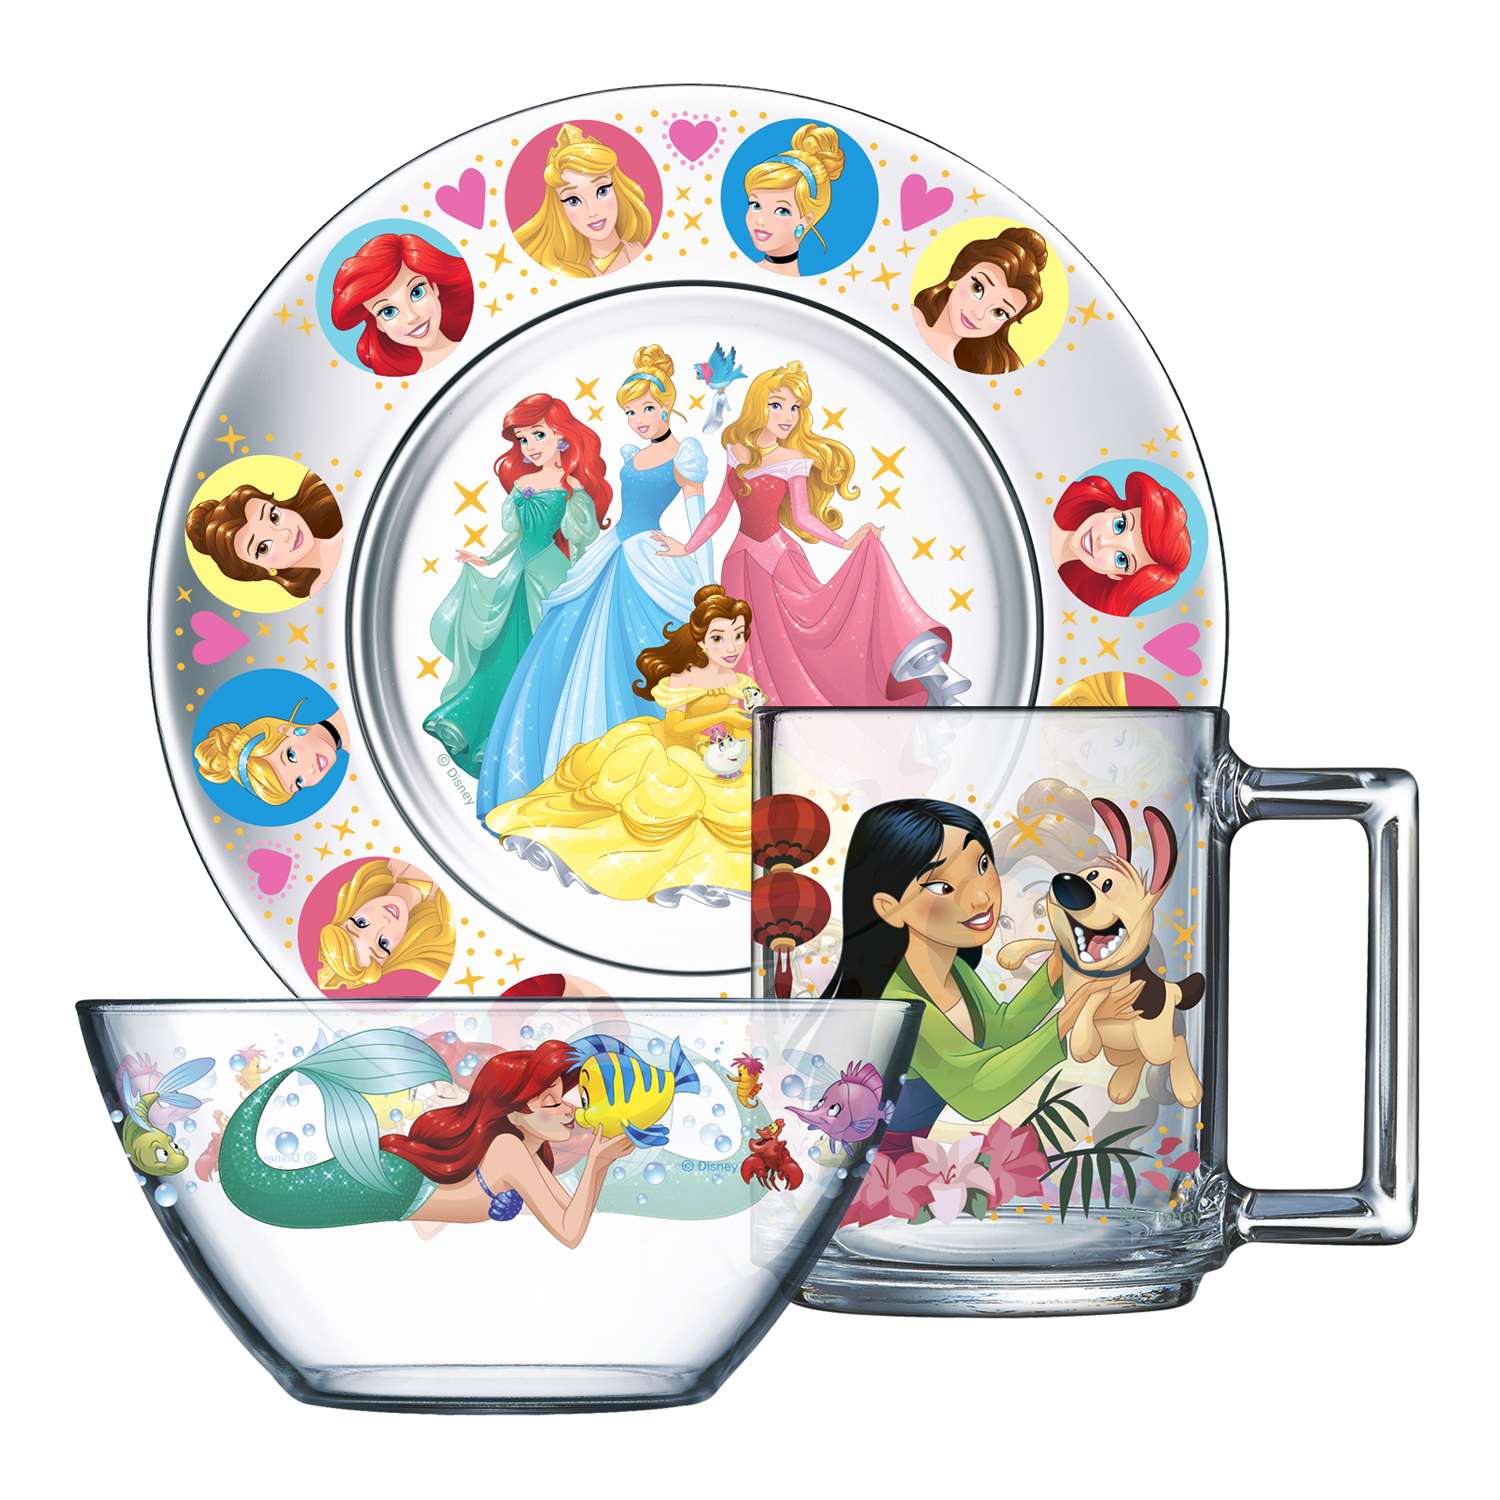 Тарелка набор детский. Набор для завтрака ОСЗ 3пр.принцессы Дисней арт. 18с2055д3. Набор детской посуды ОСЗ. Набор детской посуды для завтрака "Disney принцессы Дисней",.